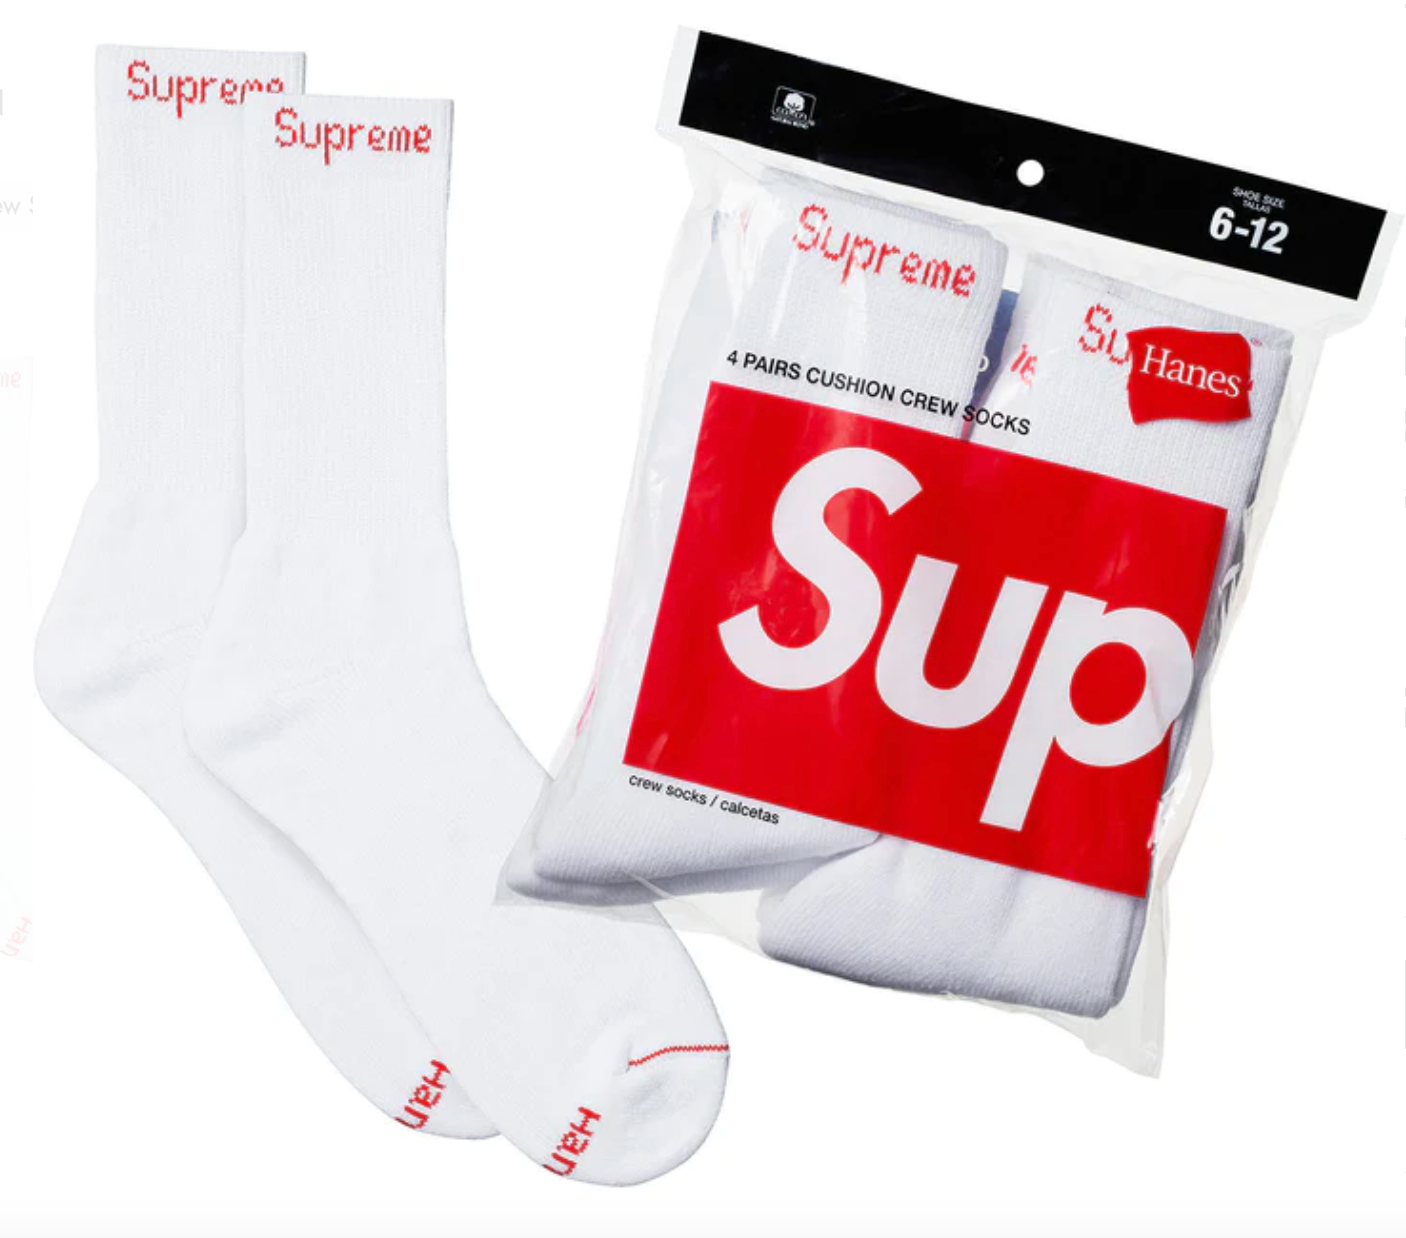 Supreme x Hanes Crew Socks 'White' (Skarpetki) Lodz Polska